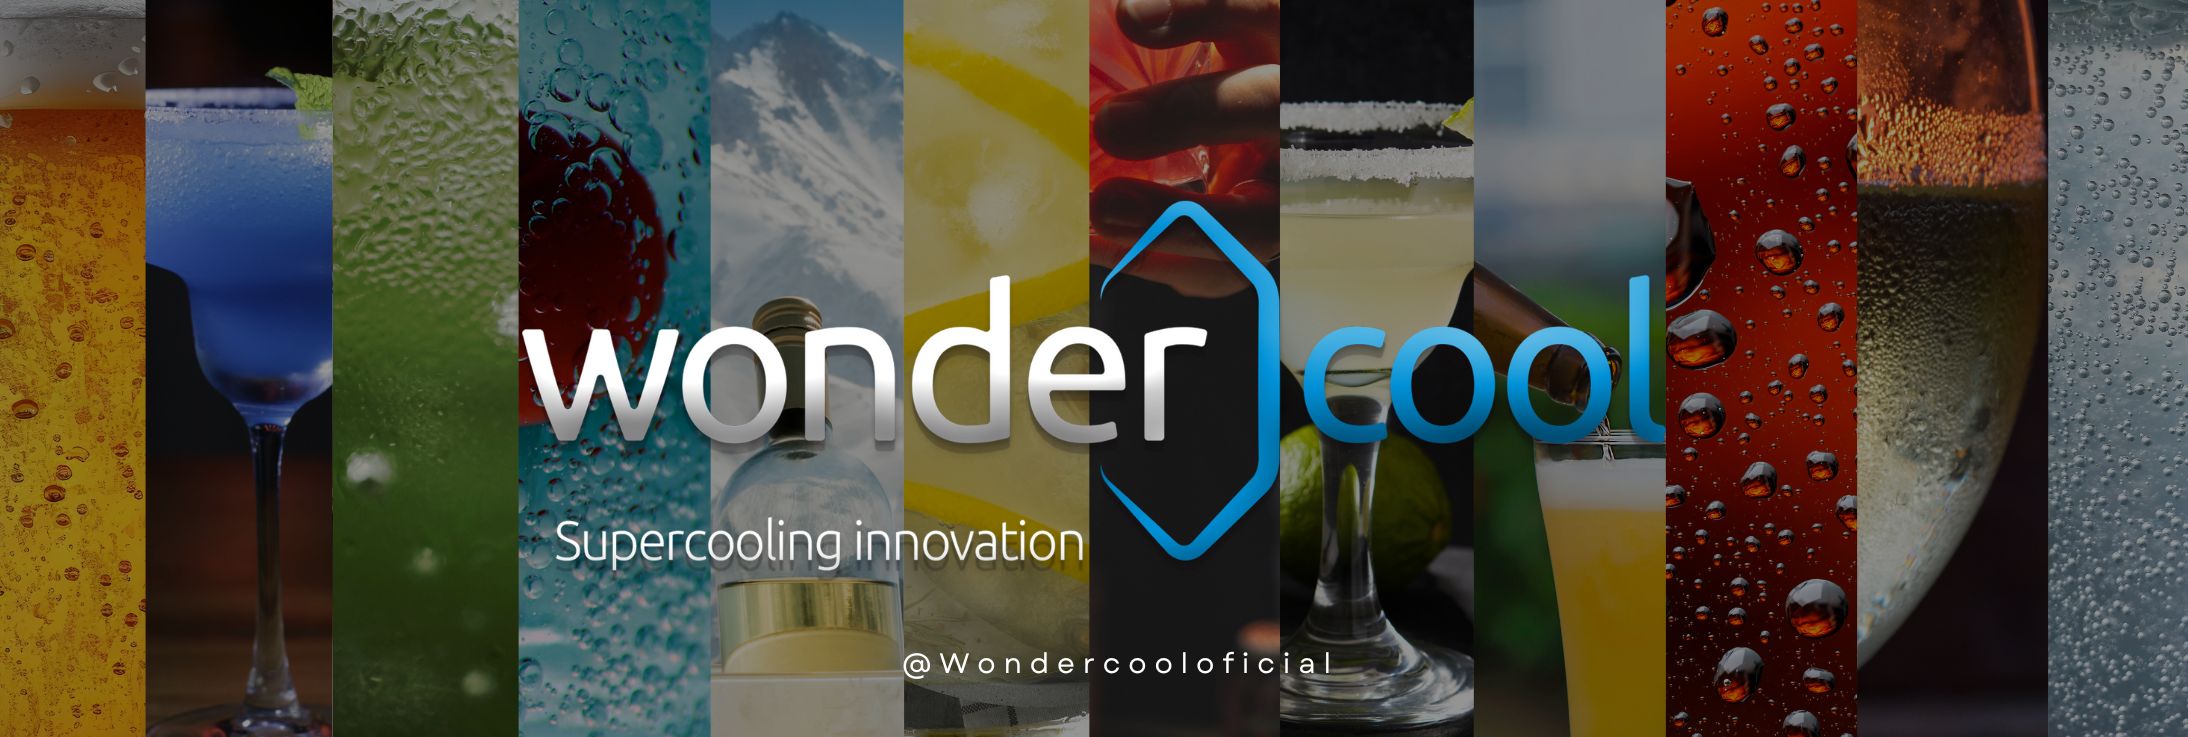 Wondercool revolucionará la hostelería en H&T Málaga